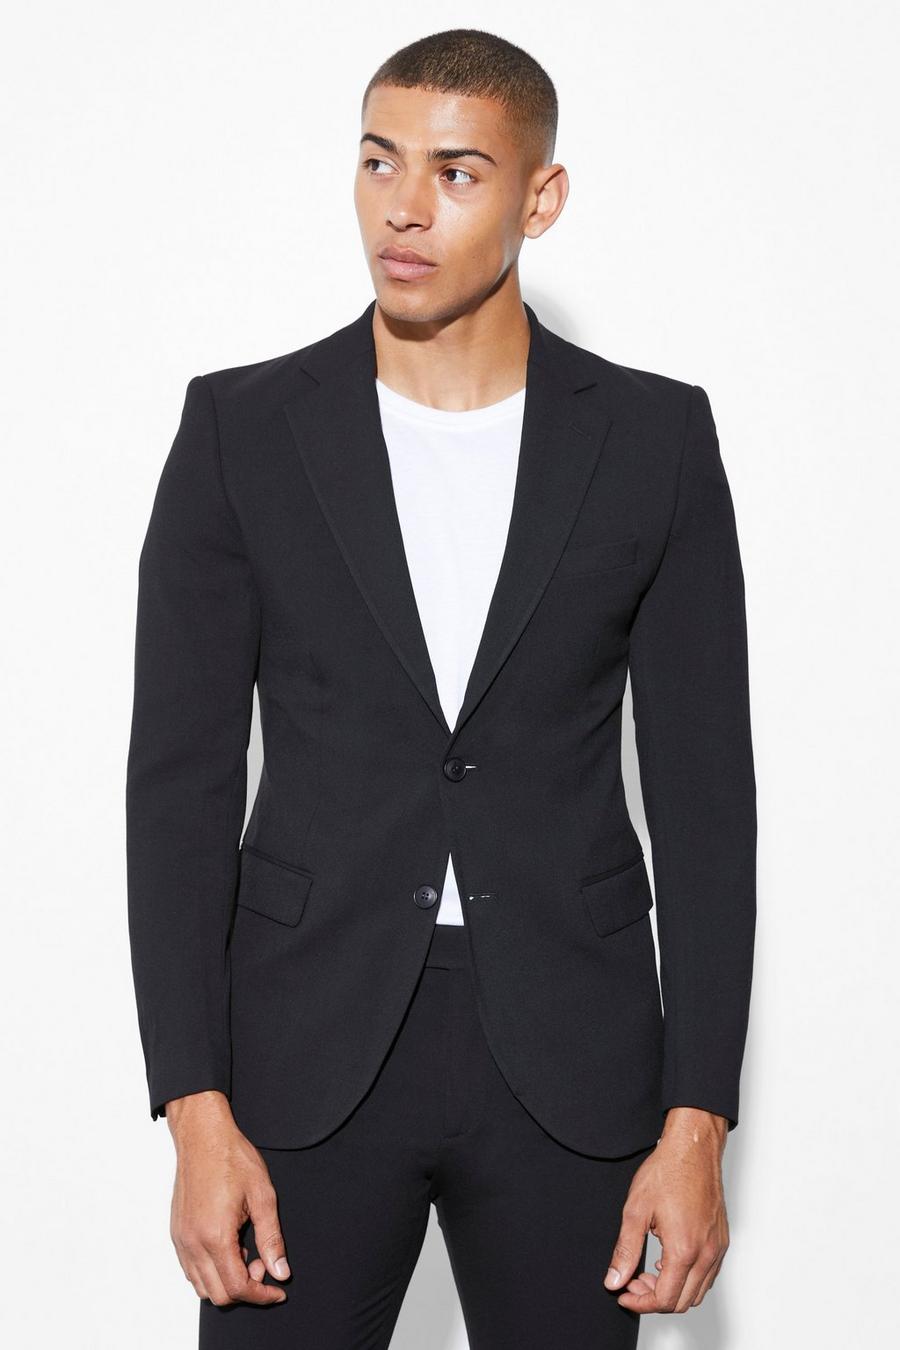 Men's Blazers, Men's Suit Jackets